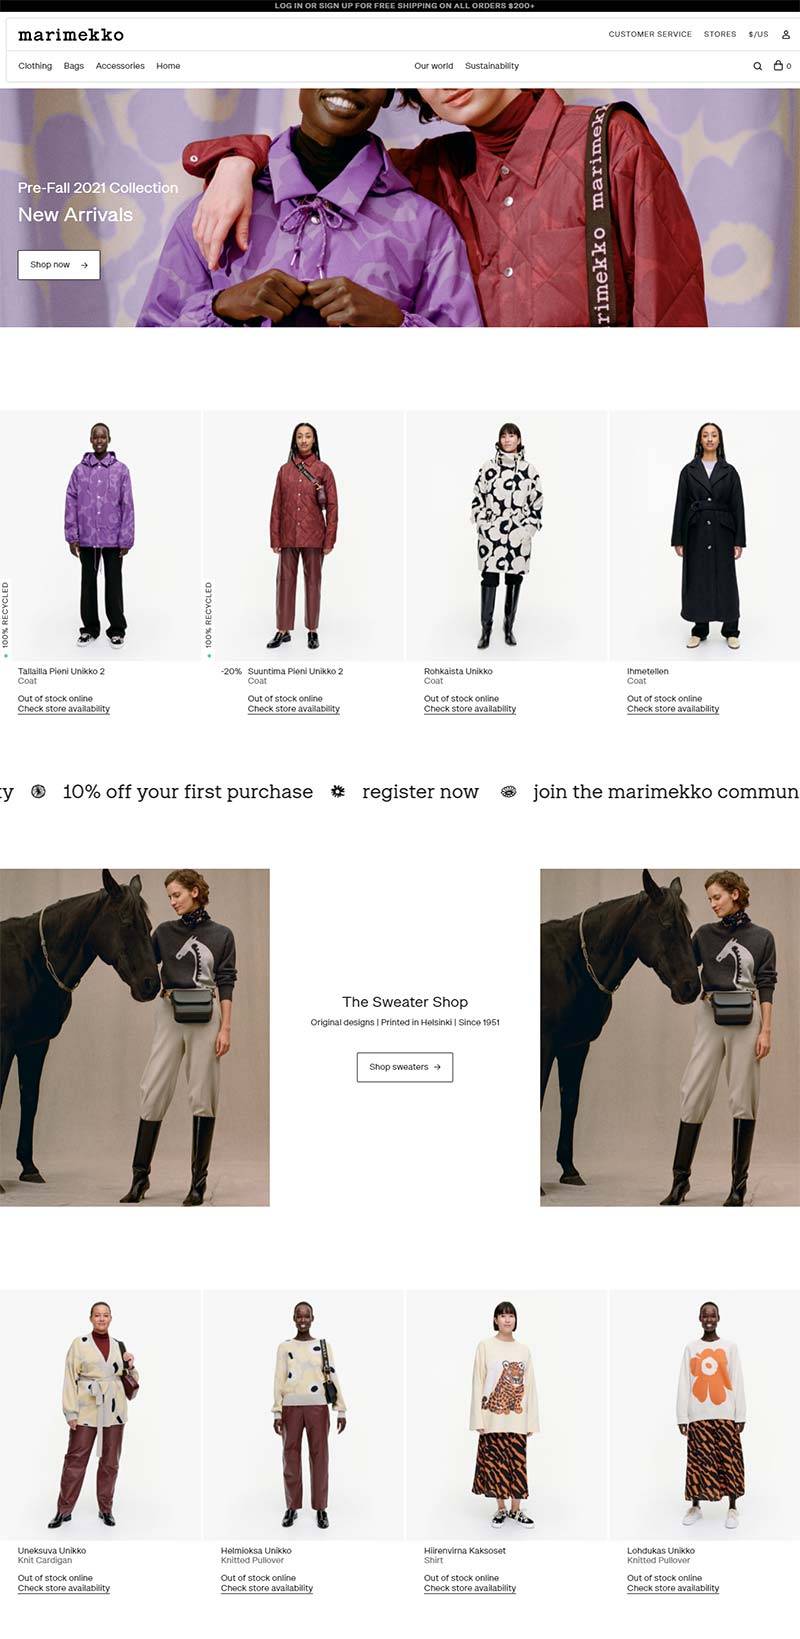 Marimekko USA 芬兰时尚服饰品牌美国官网